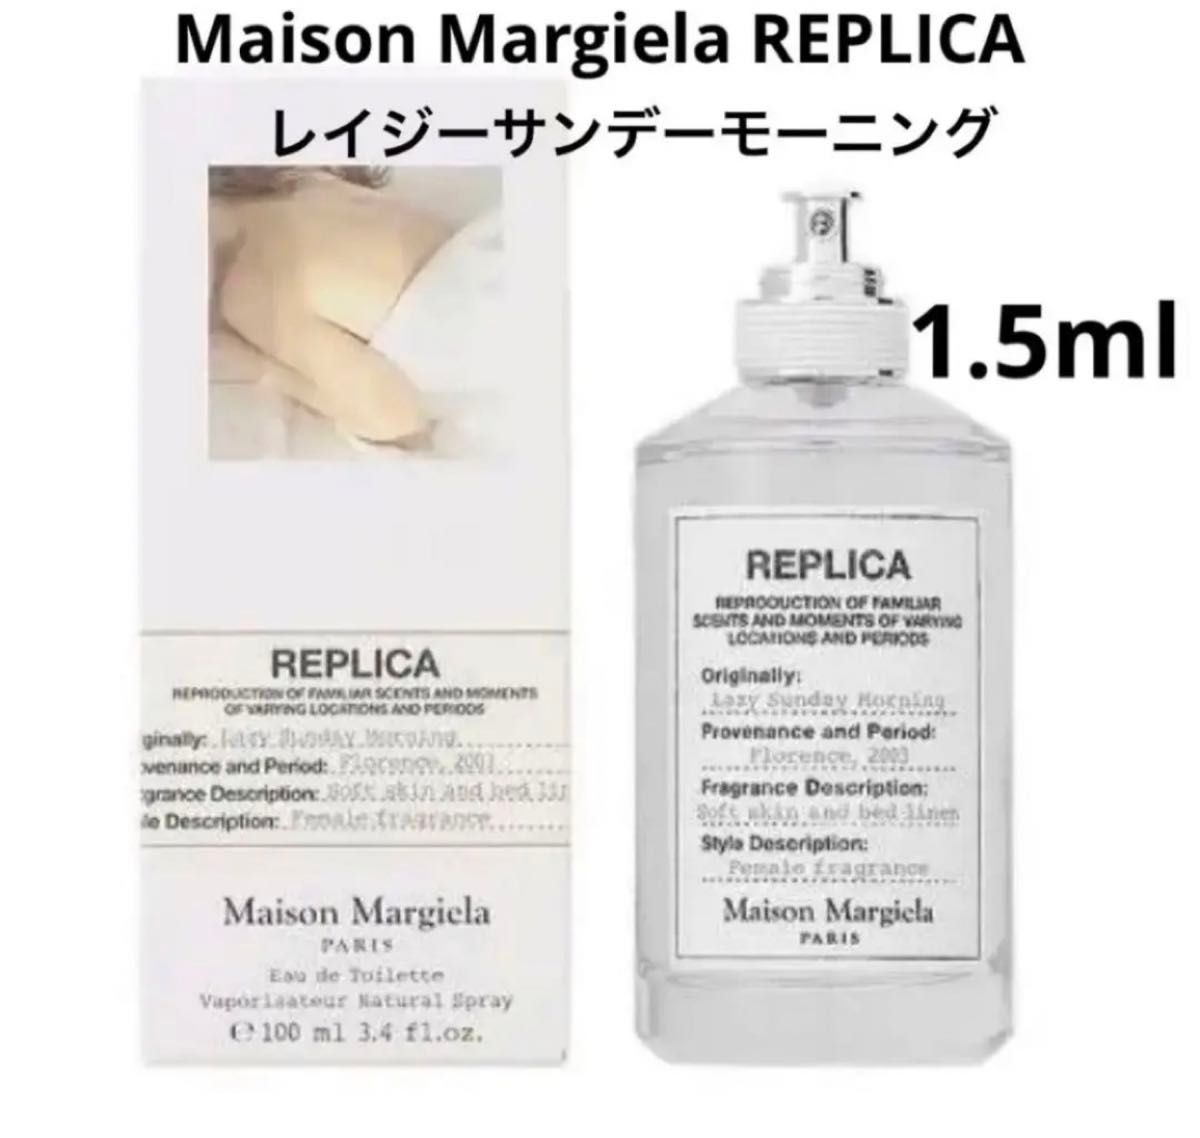 【新品】メゾンマルジェラ レプリカ レイジーサンデーモーニング 1.5ml 香水